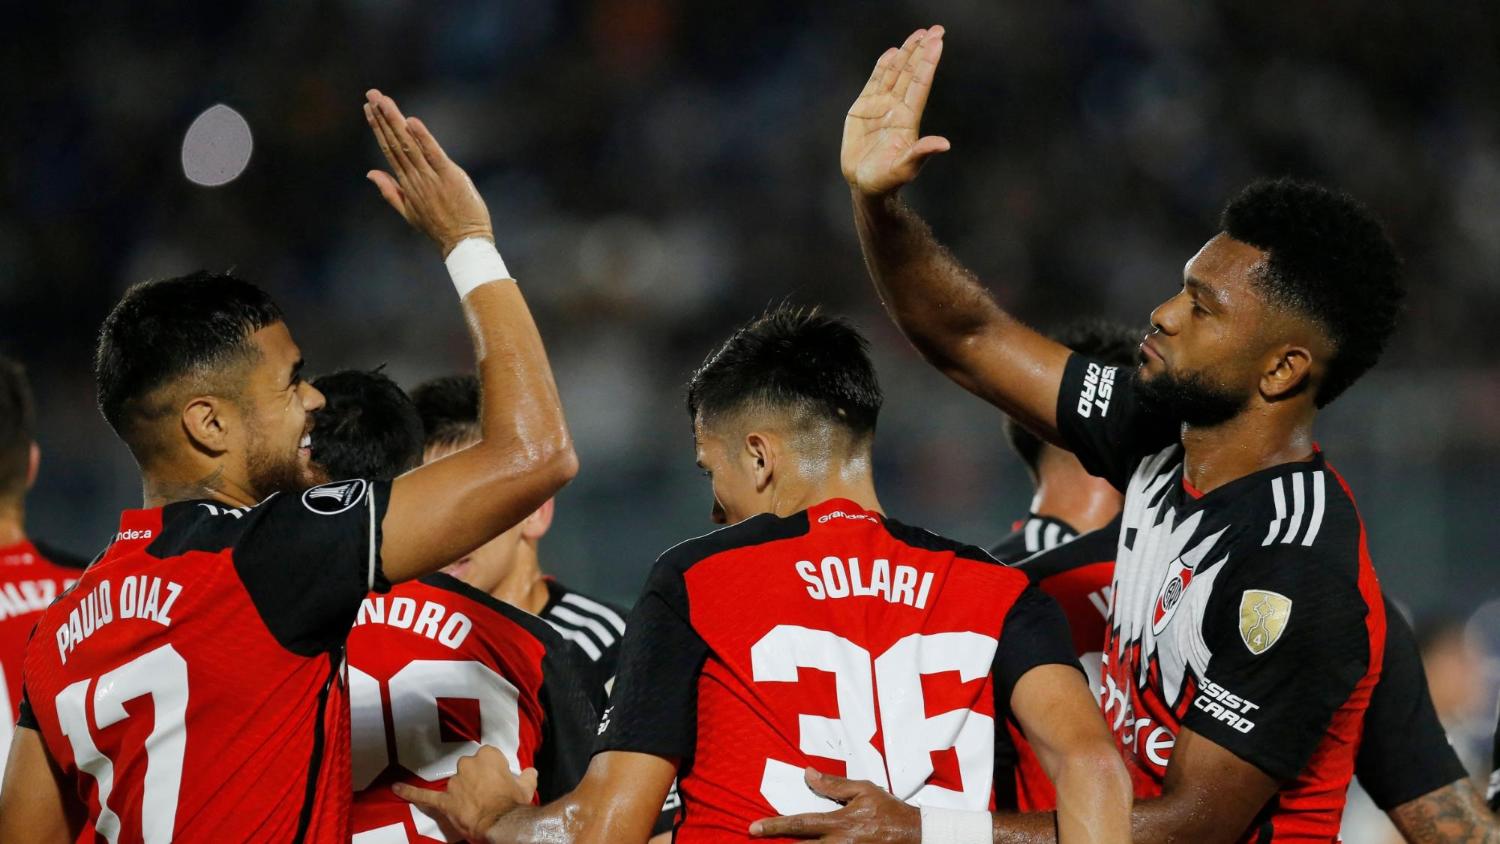 Con goles de Solari y Mastantuono, River Plate venció a Libertad y se mantiene invicto en la Copa Libertadores